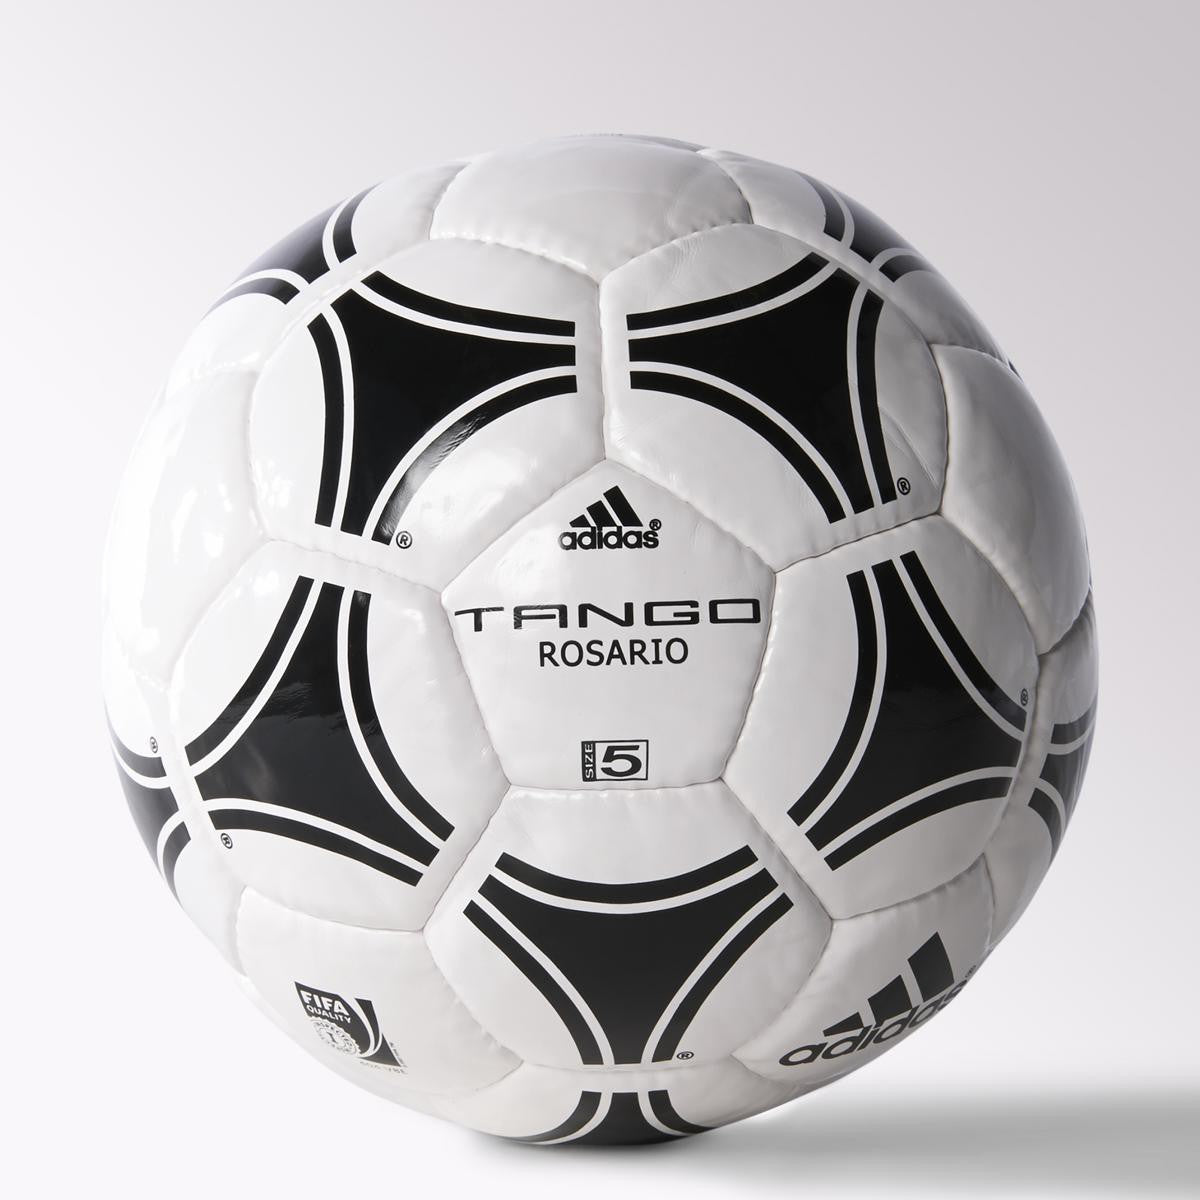 Adidas Tango Rosario Soccer Ball